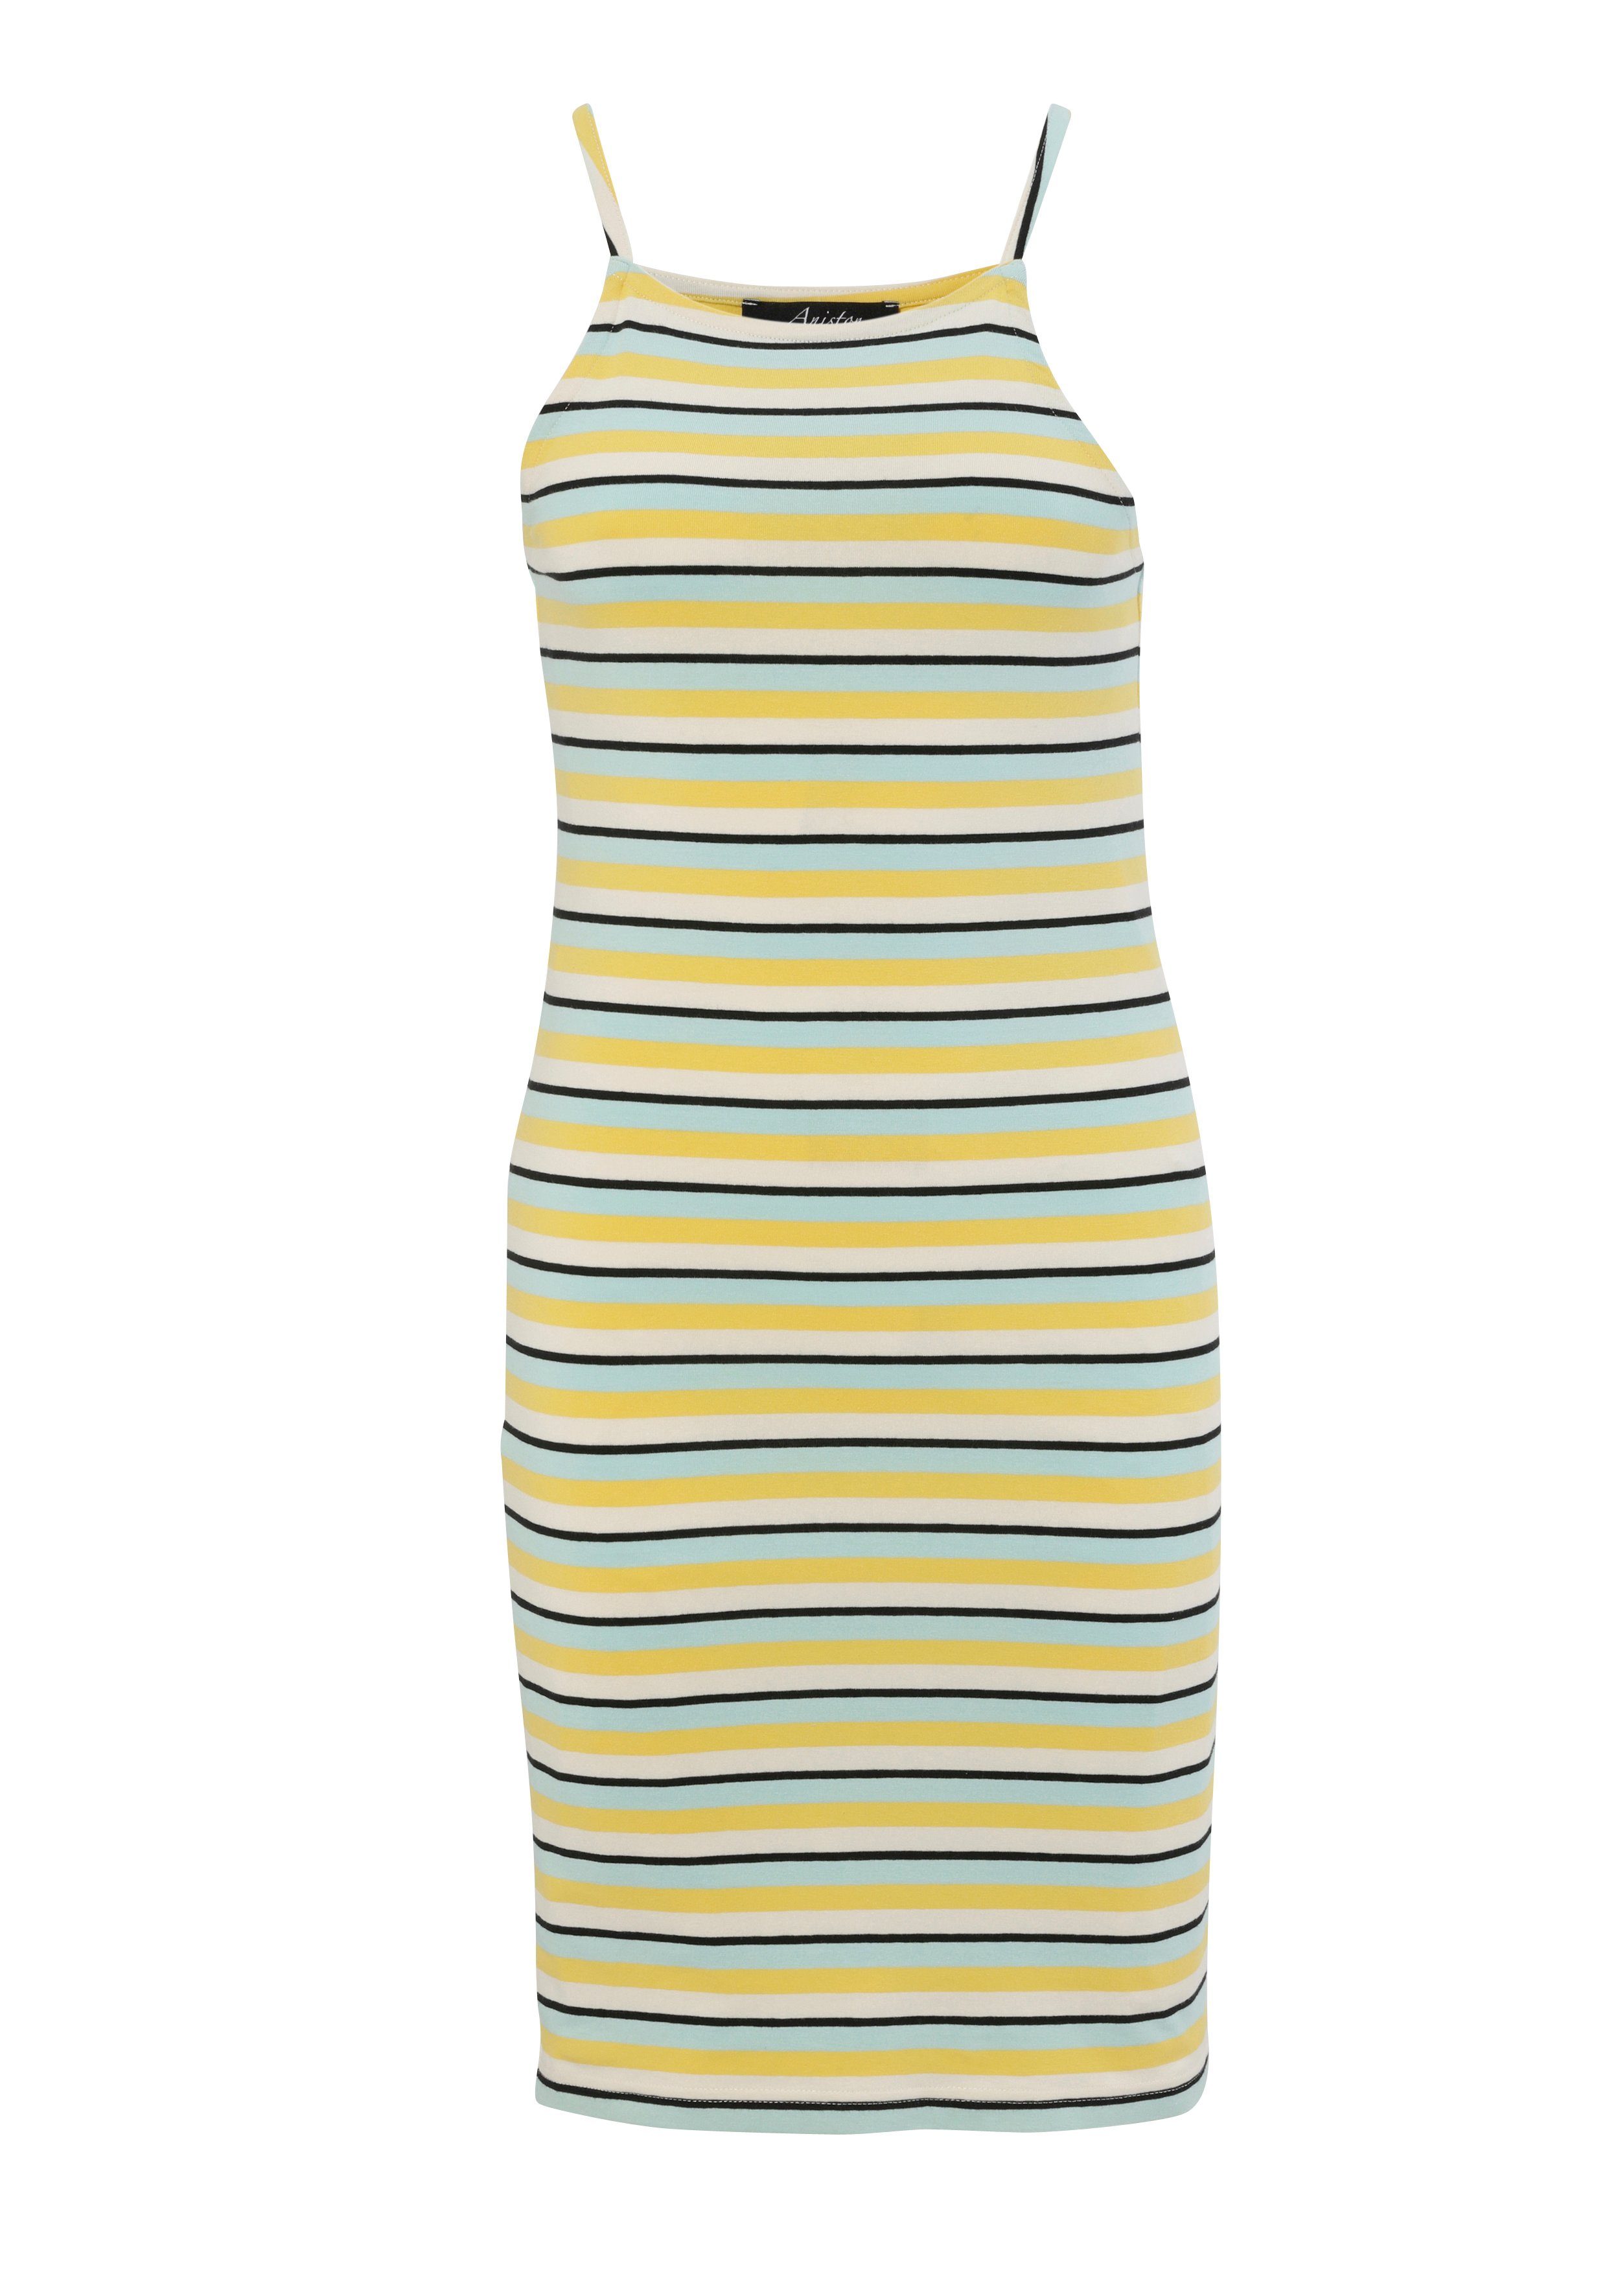 Aniston CASUAL Sommerkleid Marine-Look hast gestreift Wahl die bunt helltürkis-gelb-wollweiß-schwarz oder du 